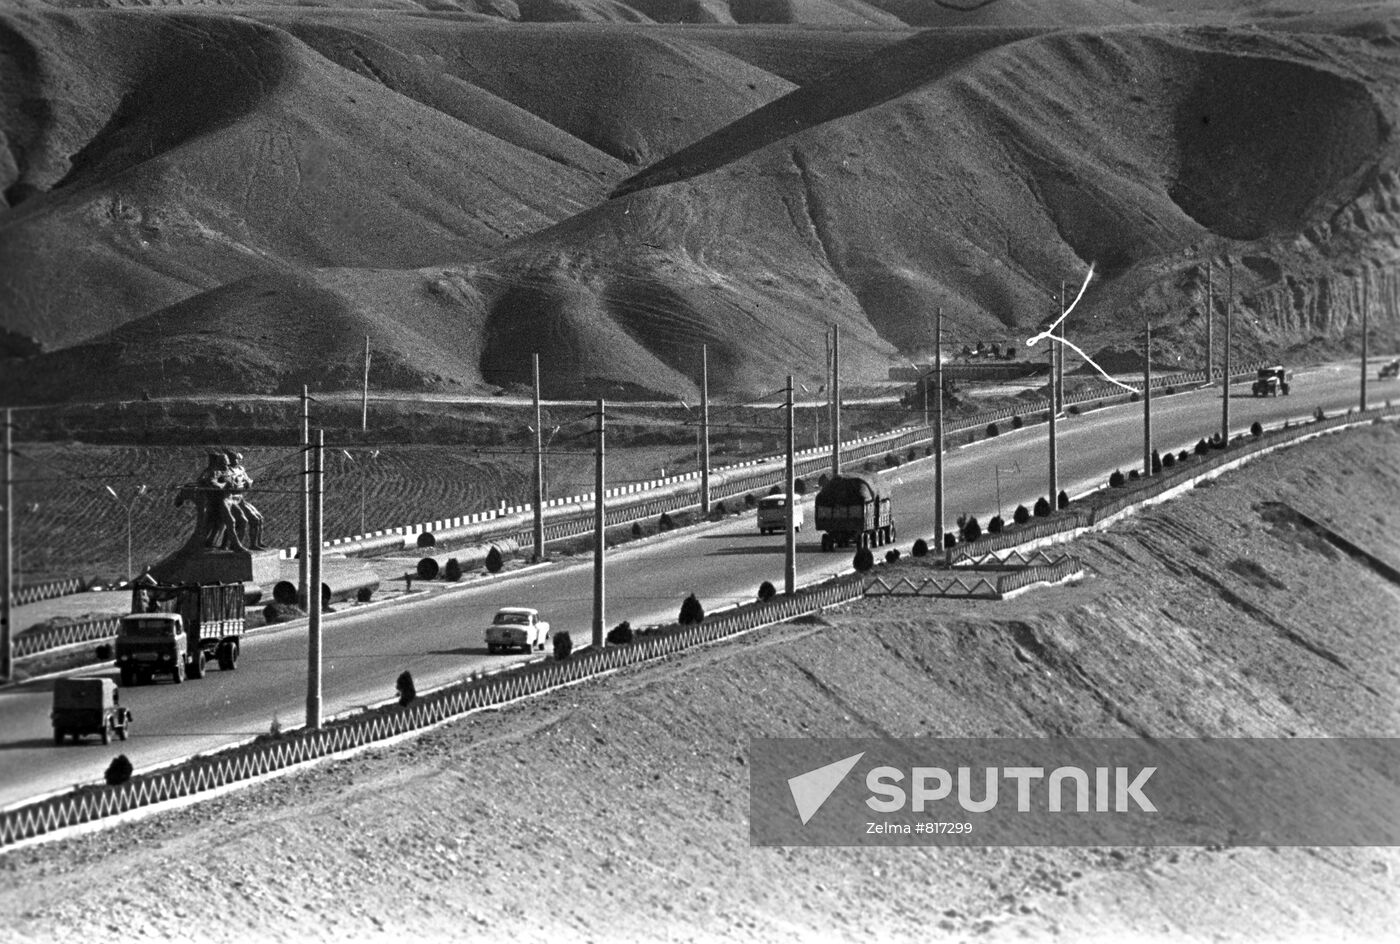 The Great Uzbek Highway